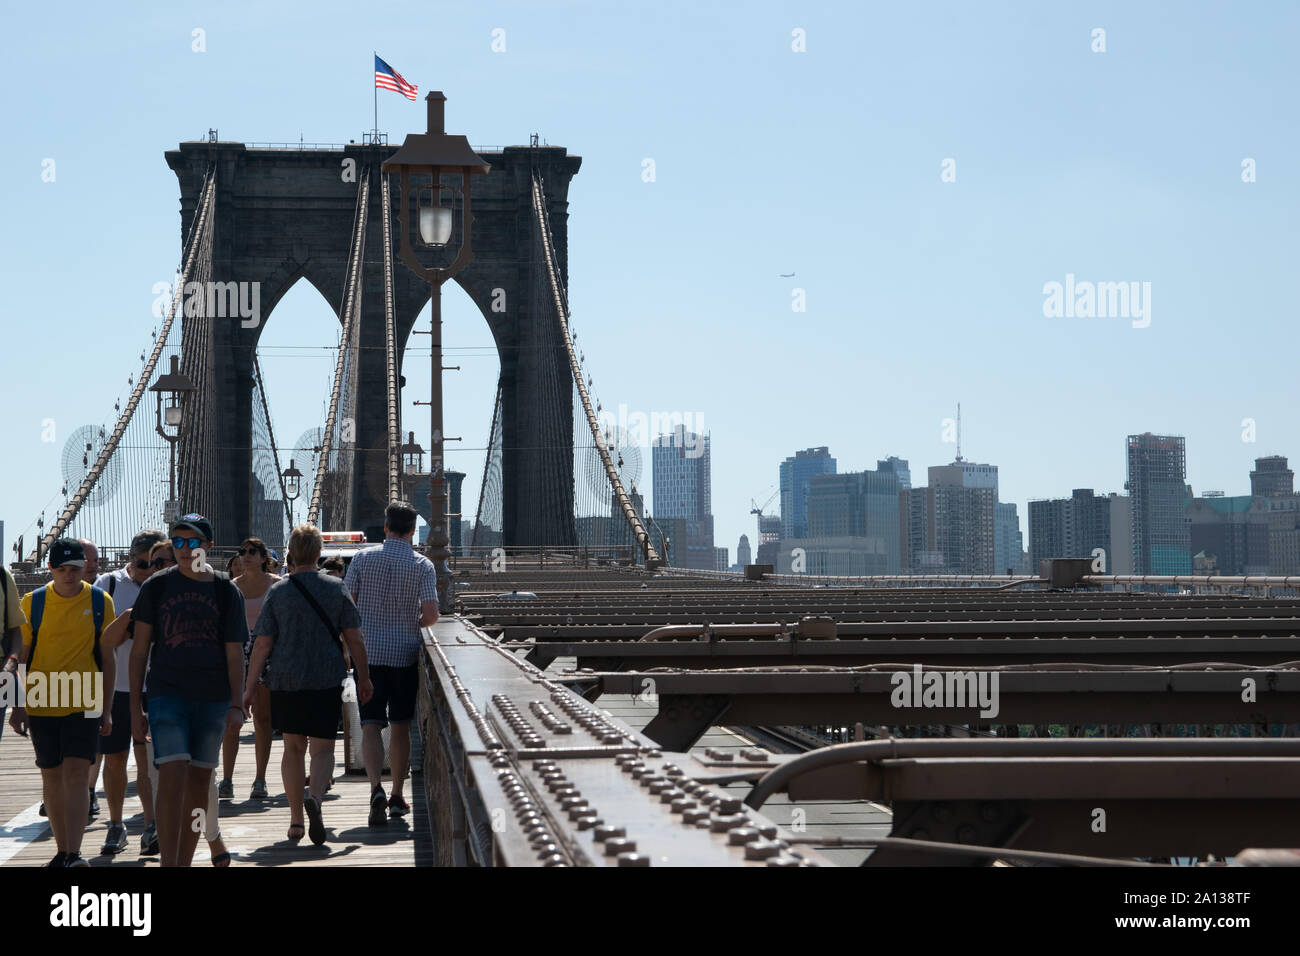 Menschen überqueren die Brroklyn Bridge, weil sie sowohl eine tolle Aussicht auf Brooklyn als auch auf die Skyline von Lower Manhattan bietet. Foto Stock